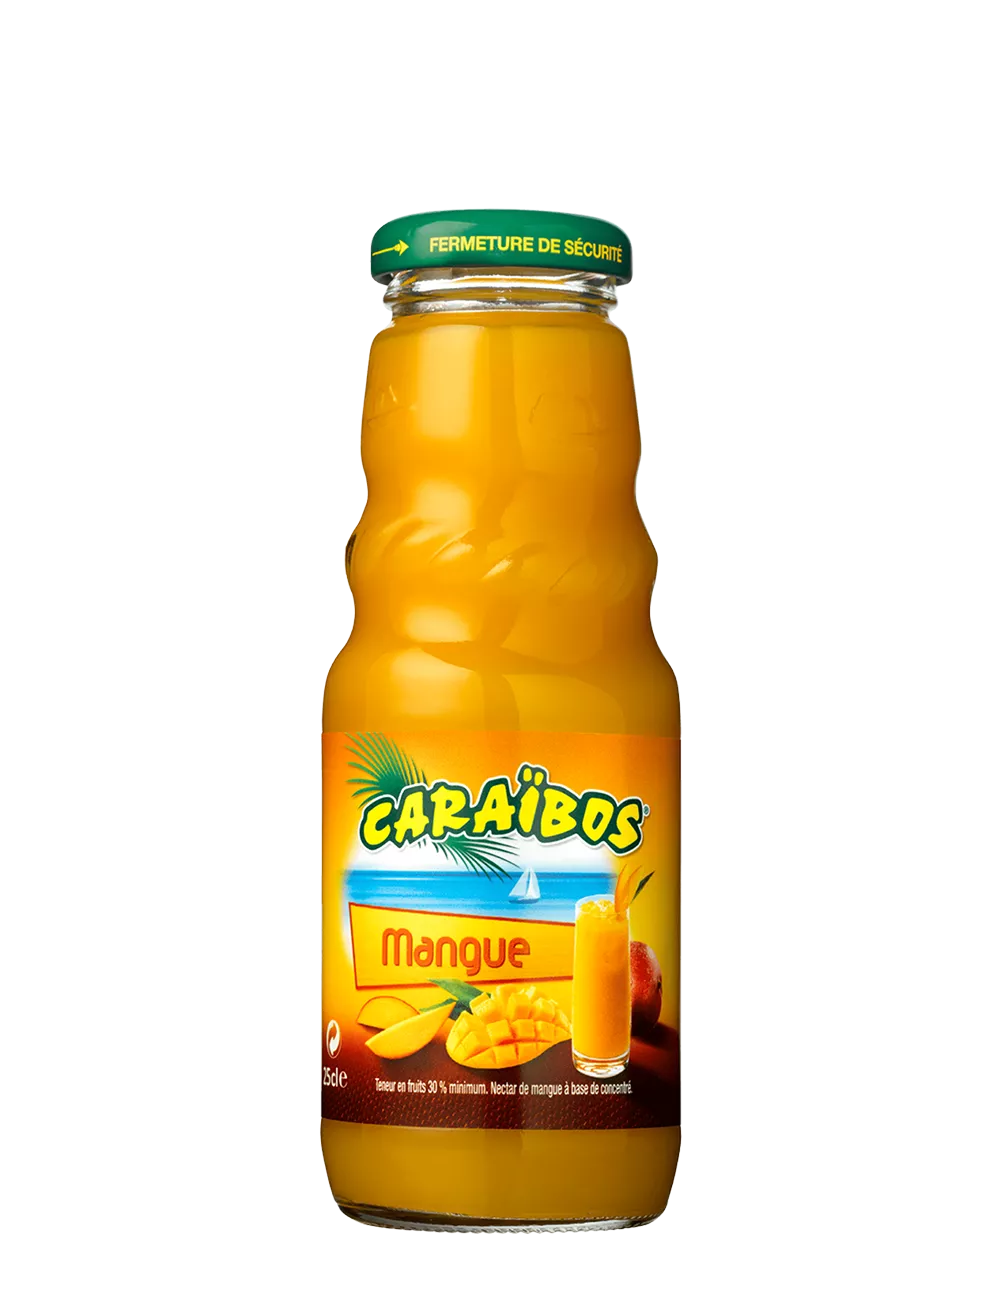 Nectar de Mangue - Caraïbos